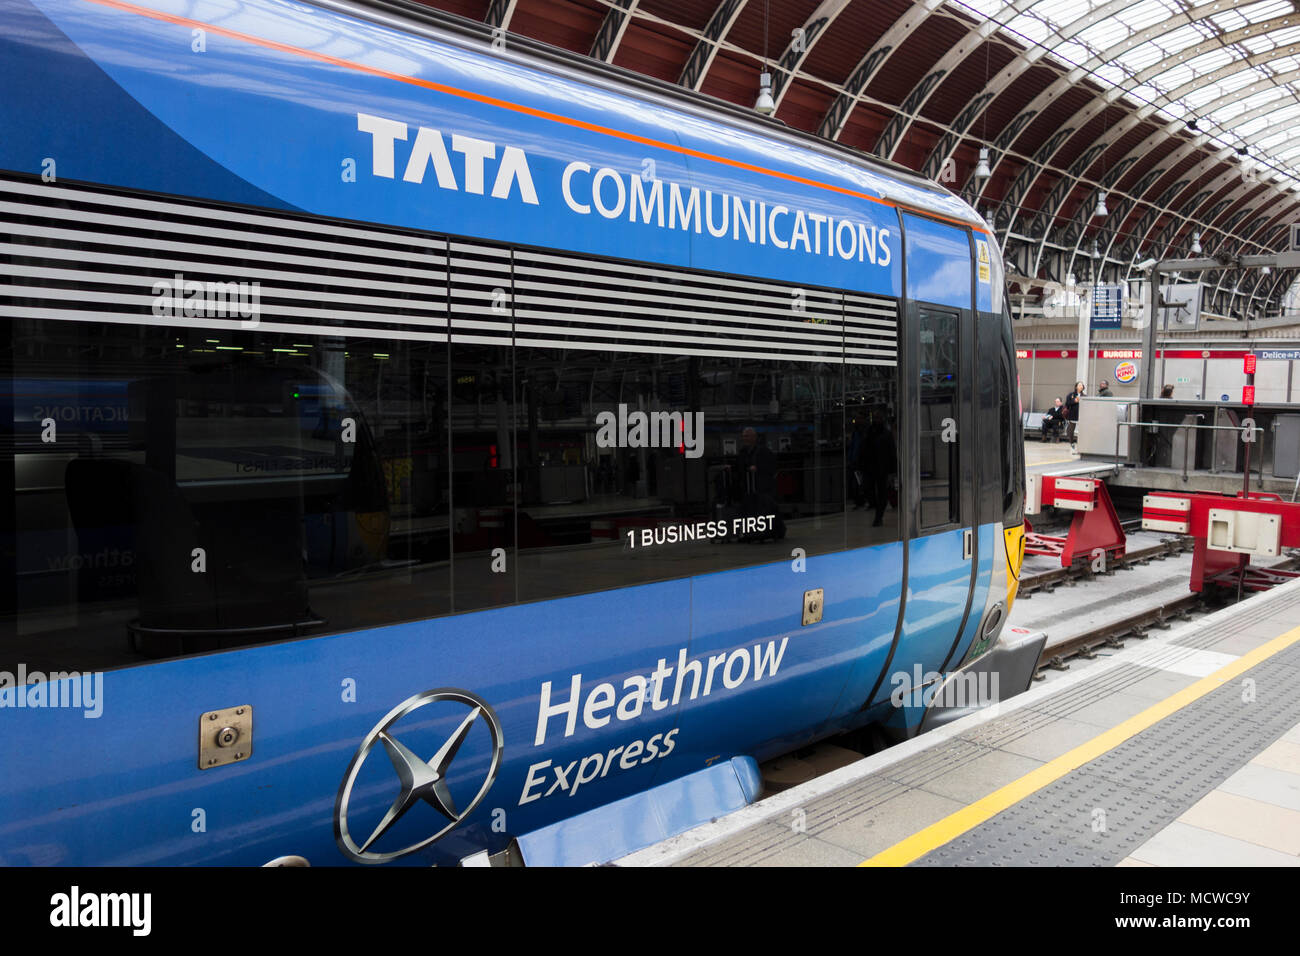 Comunicazione Tata treno Heathrow Express arriva alla stazione di Paddington, Praed Street, Paddington, Londra W2, Regno Unito Foto Stock